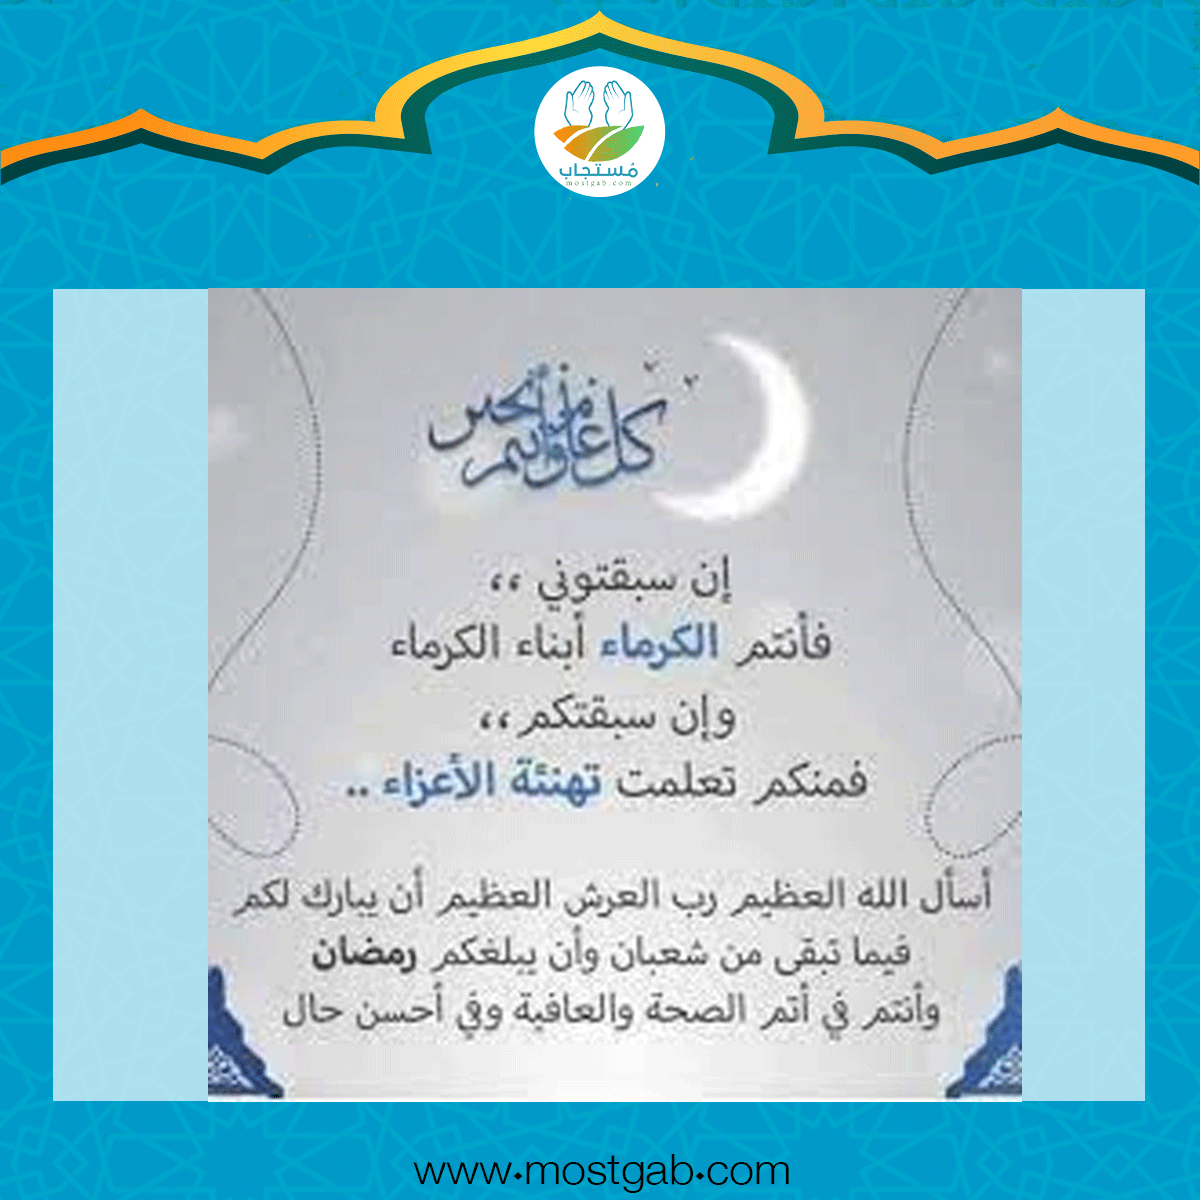 تهنئة رسمية بمناسبة شهر رمضان